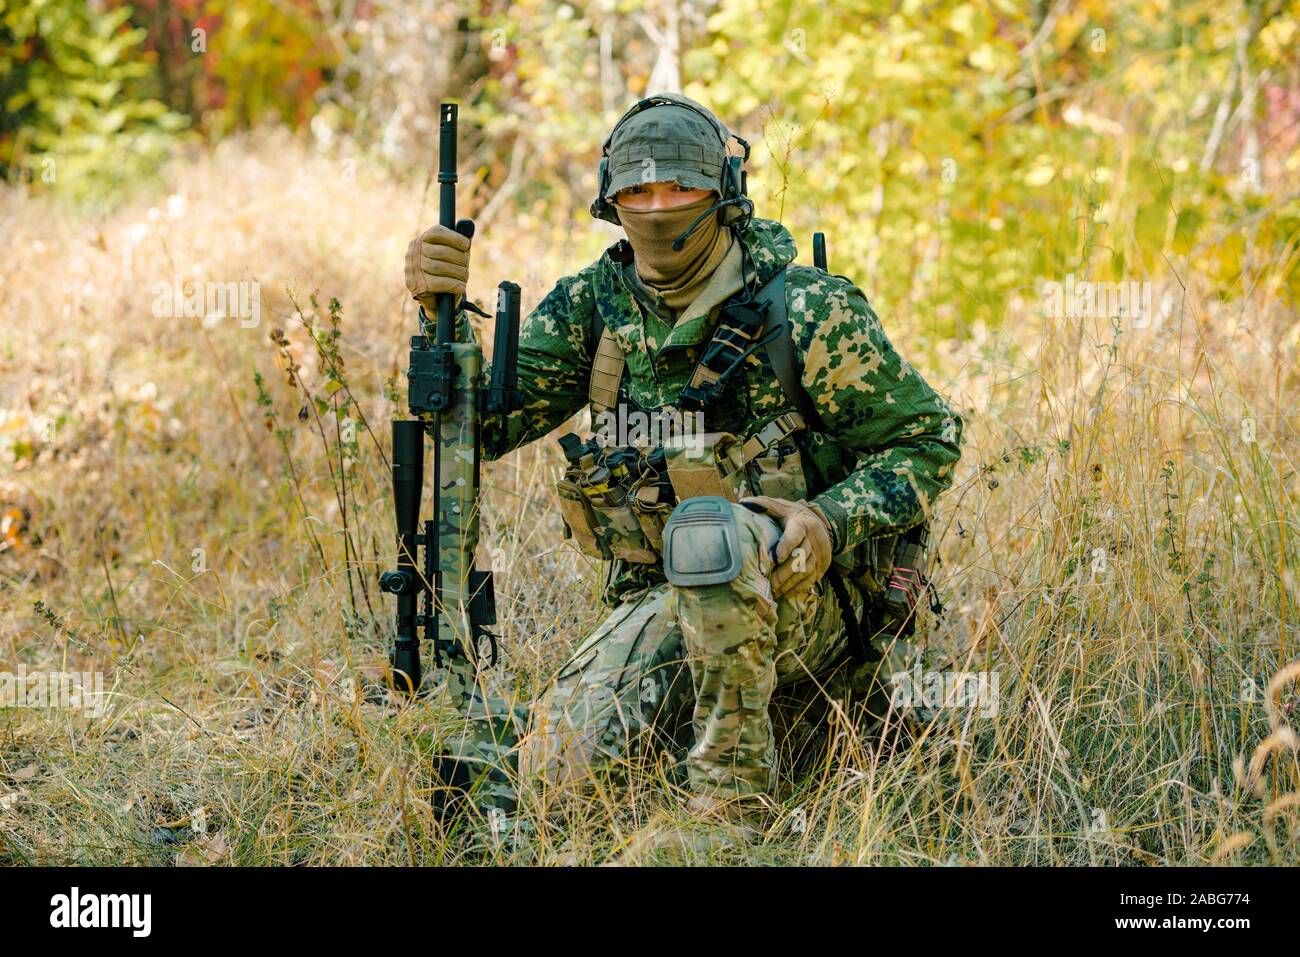 Airsoft hombre uniformado con un rifle de francotirador, que